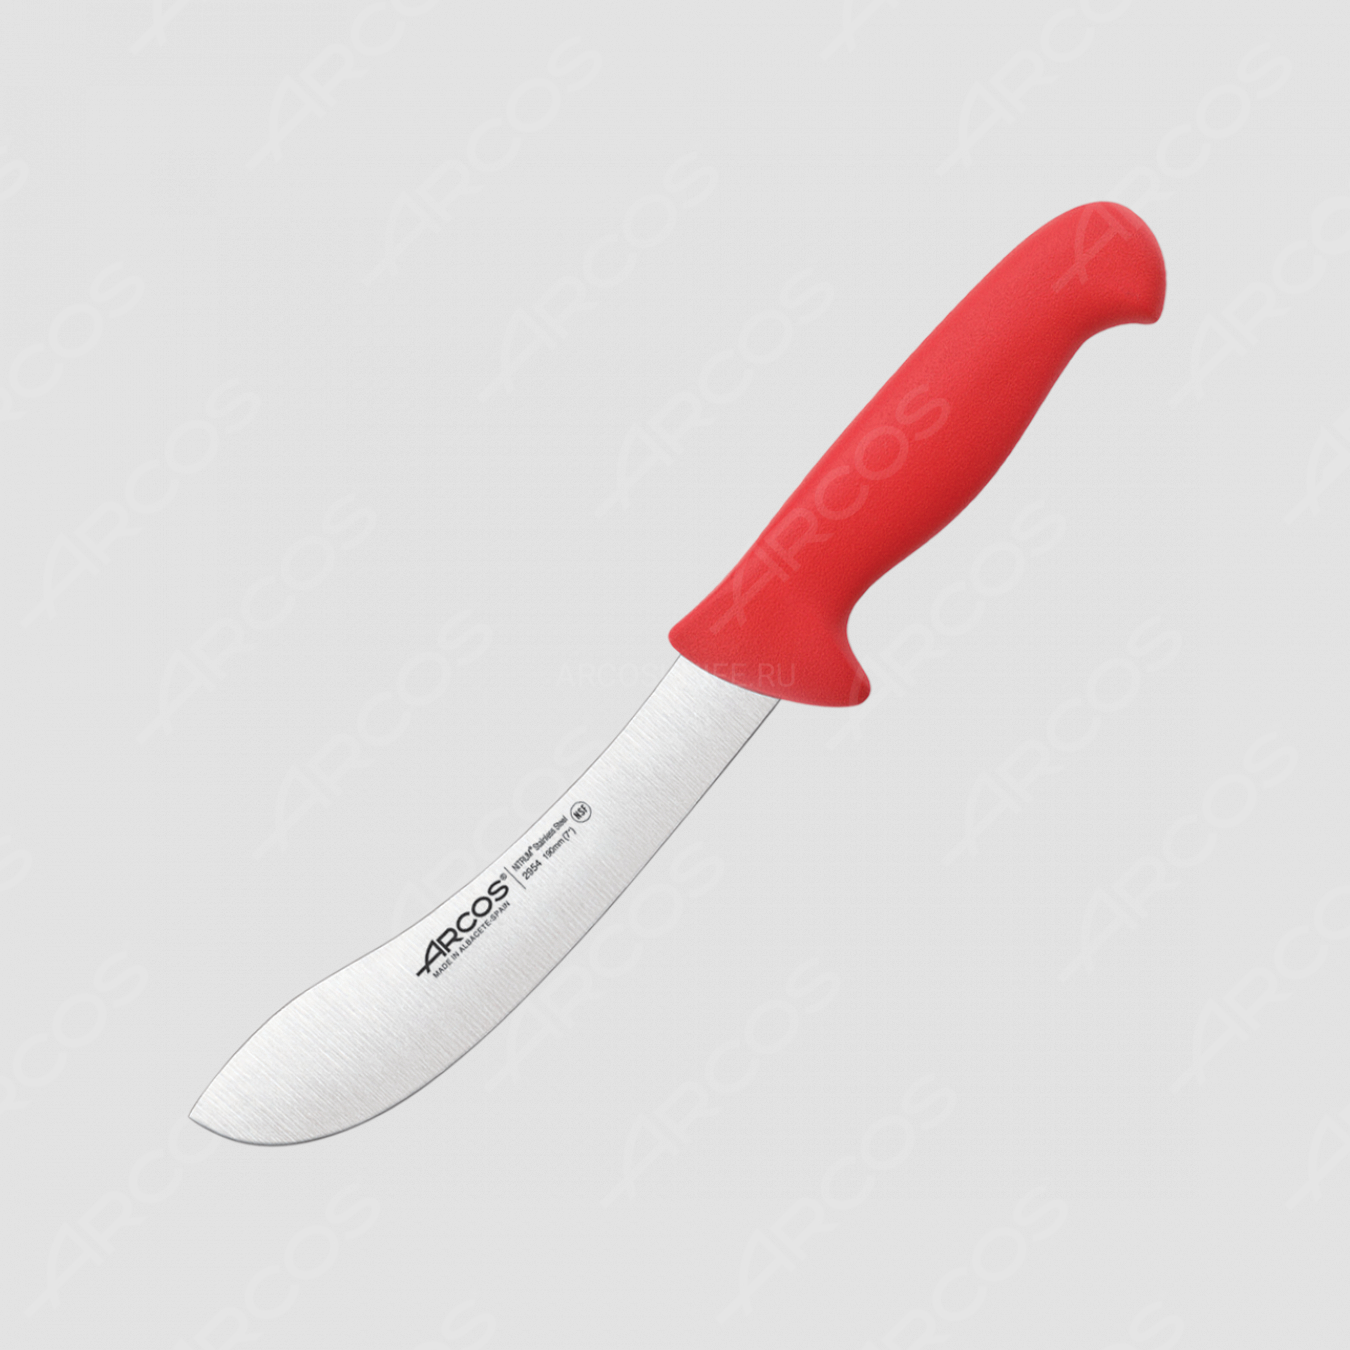 Нож кухонный для разделки 19 см, рукоять - красная, серия 2900, ARCOS, Испания